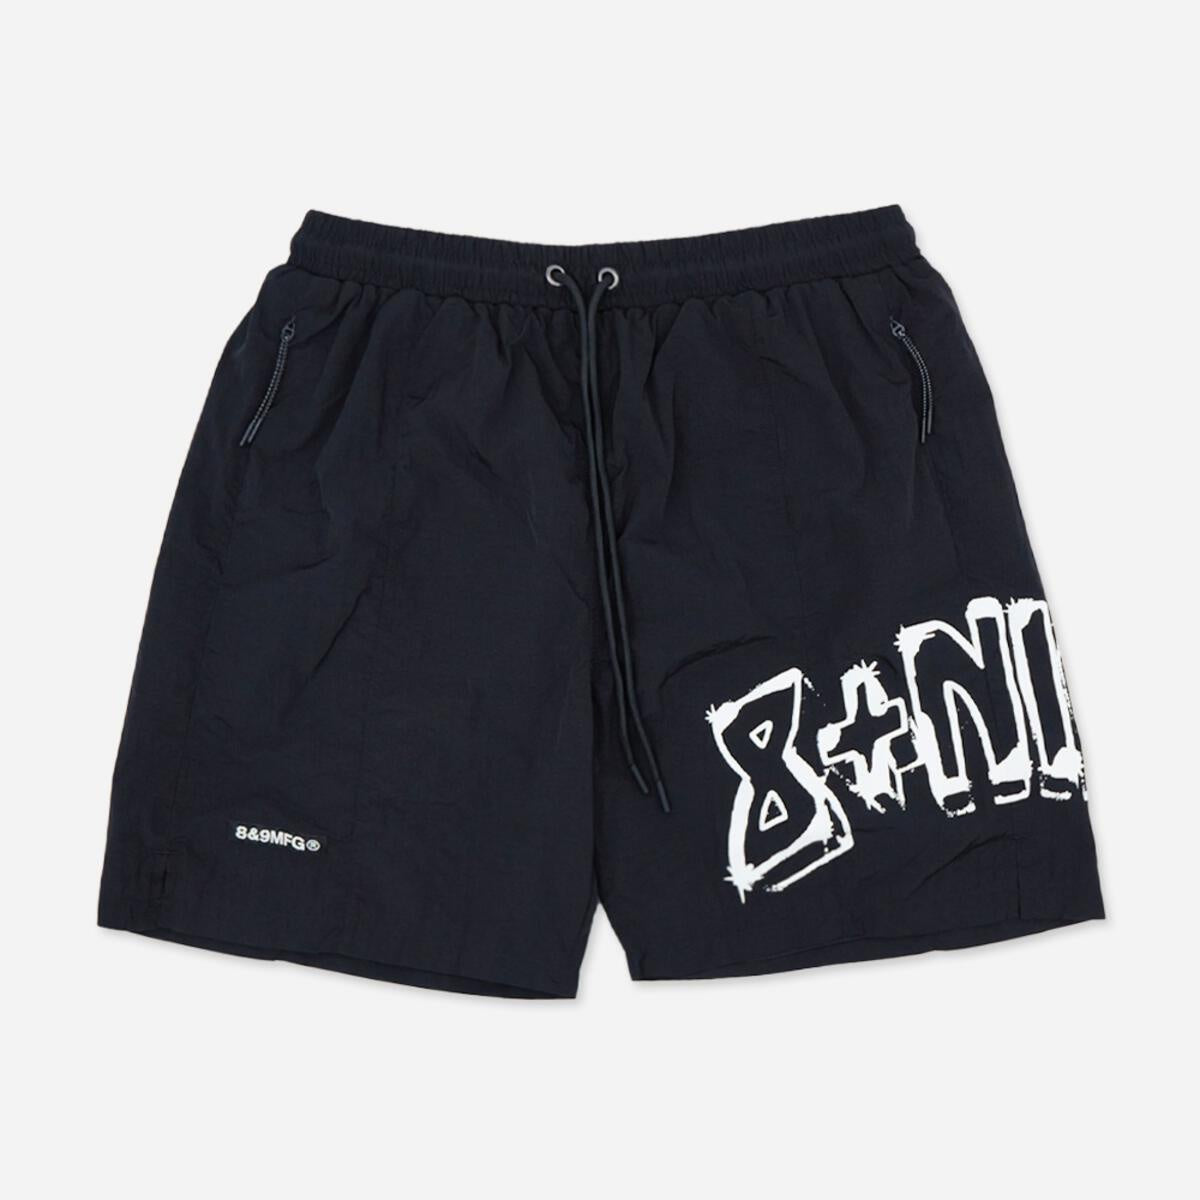 8&9 Super Krinkle Black Shorts (SHSUPBLK)